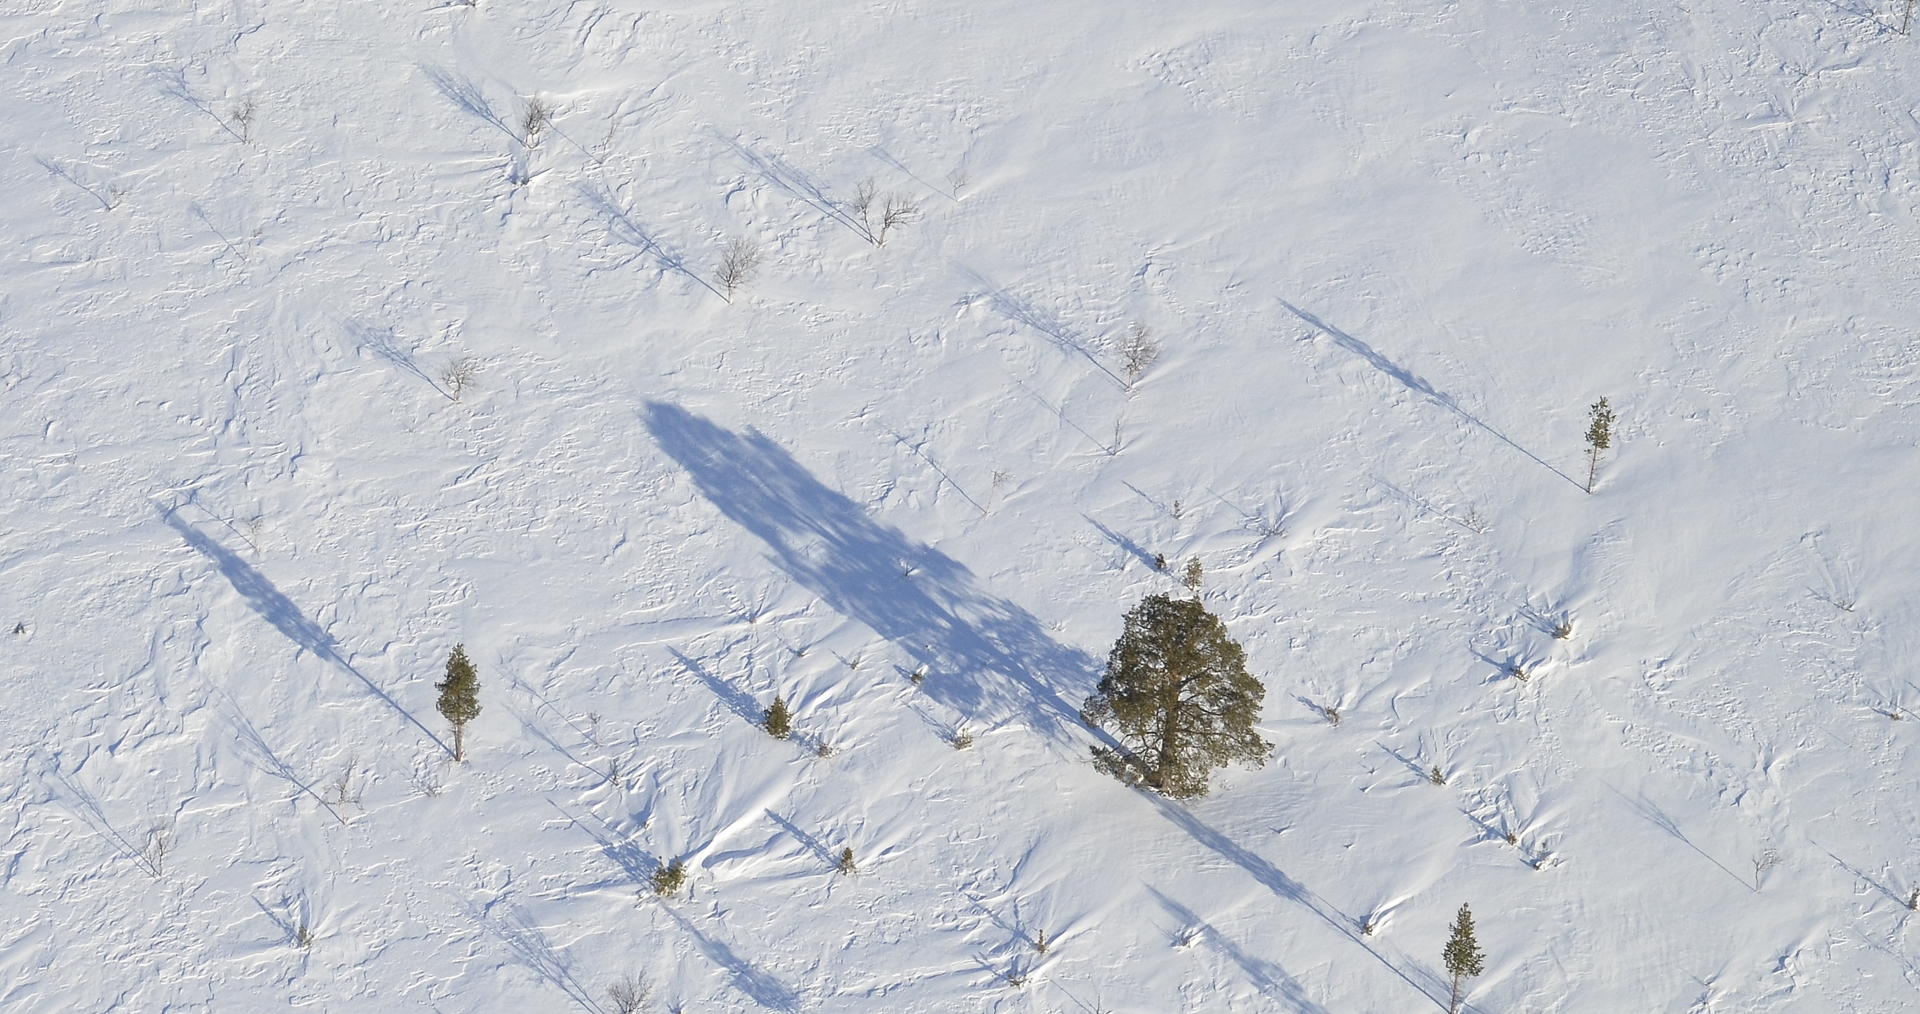 Tässä kuvasta tulee mieleen neljäntuulenhattu, kun puiden juurella näkyy miten tuuli on kinostanut lunta monesta suunnasta.